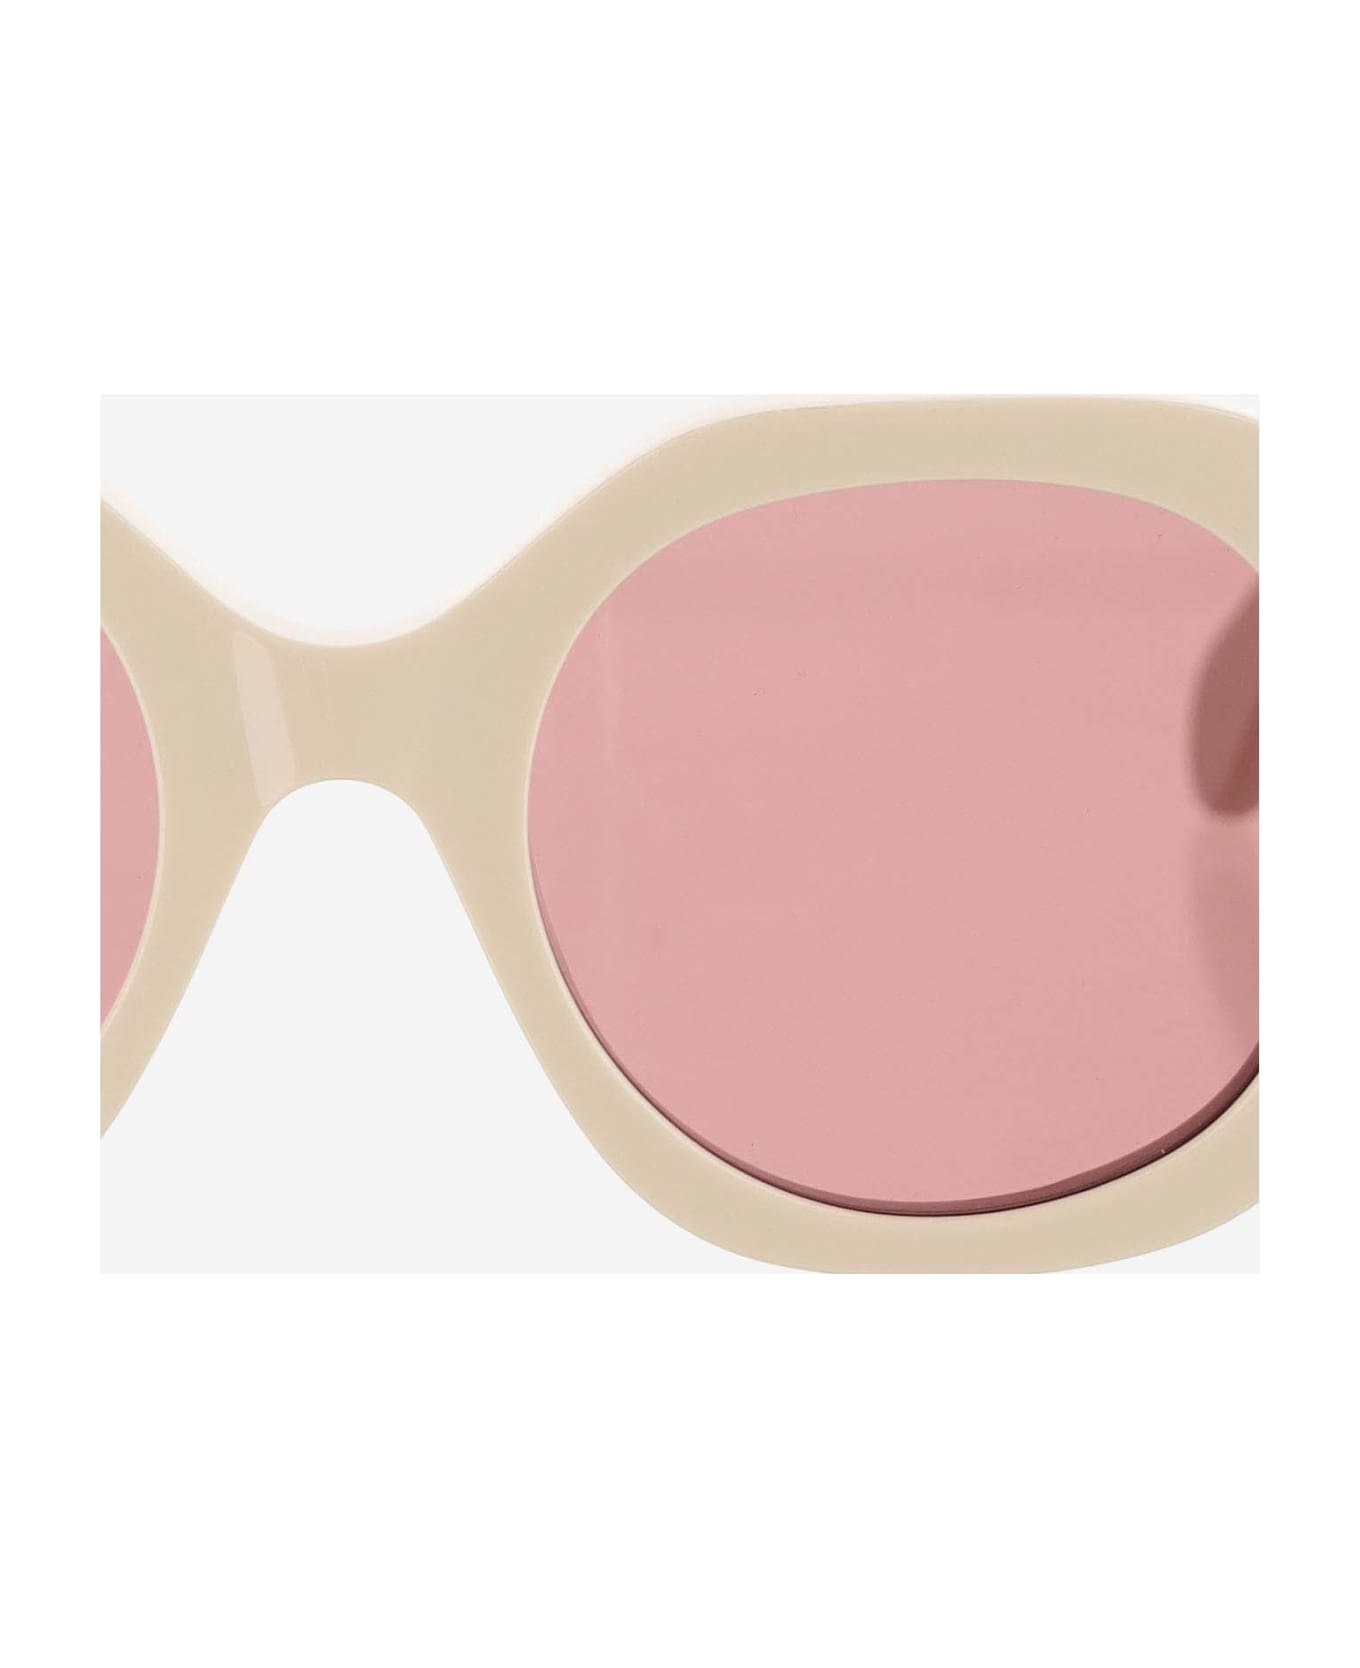 Chloé Logo Sunglasses - White